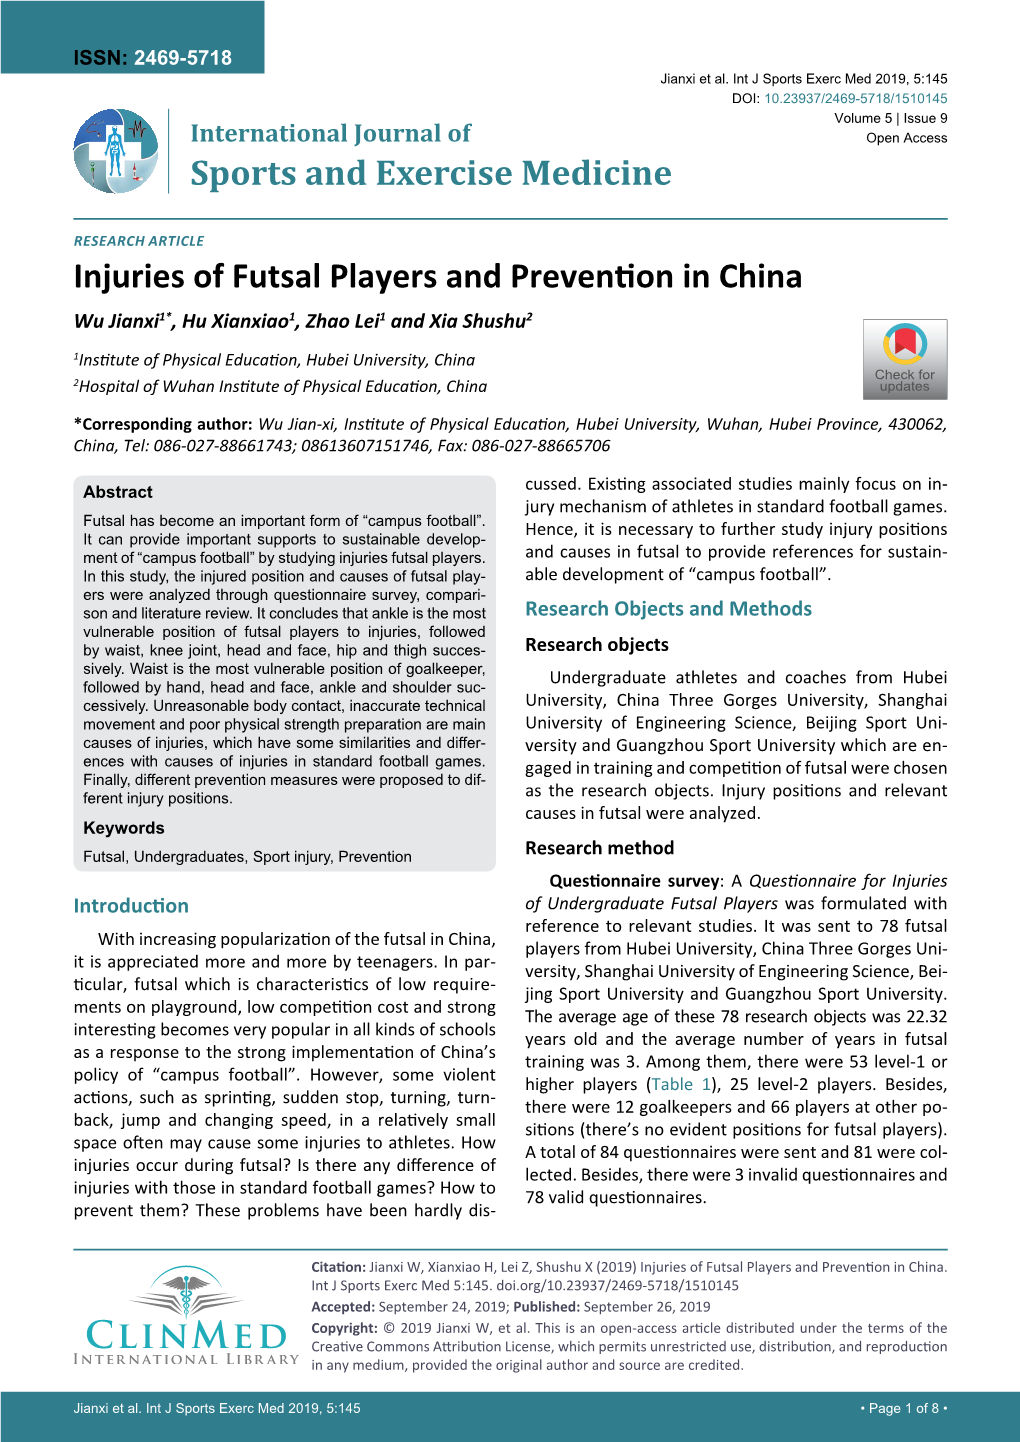 Injuries of Futsal Players and Prevention in China Wu Jianxi1*, Hu Xianxiao1, Zhao Lei1 and Xia Shushu2